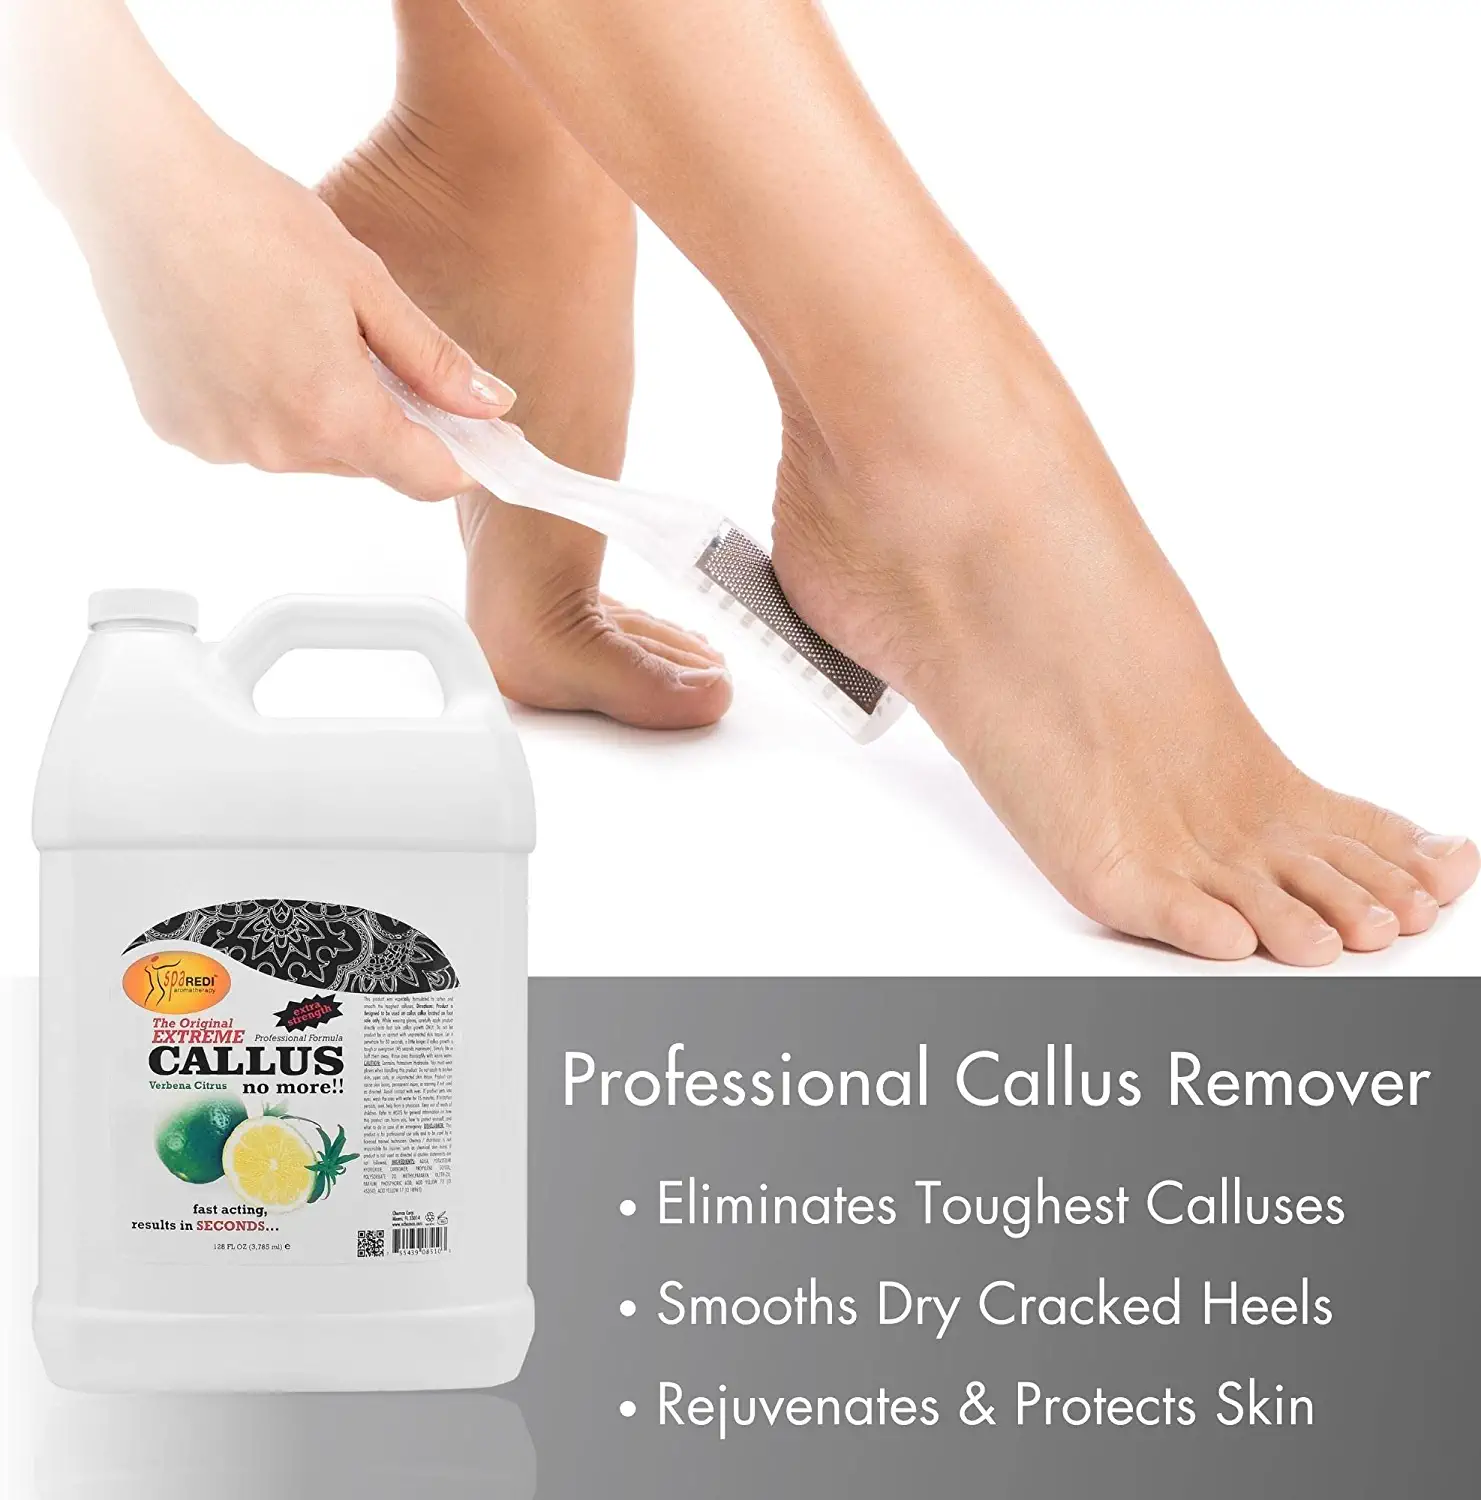 Callus remover for feet gel - Lemon & lime - 128oz